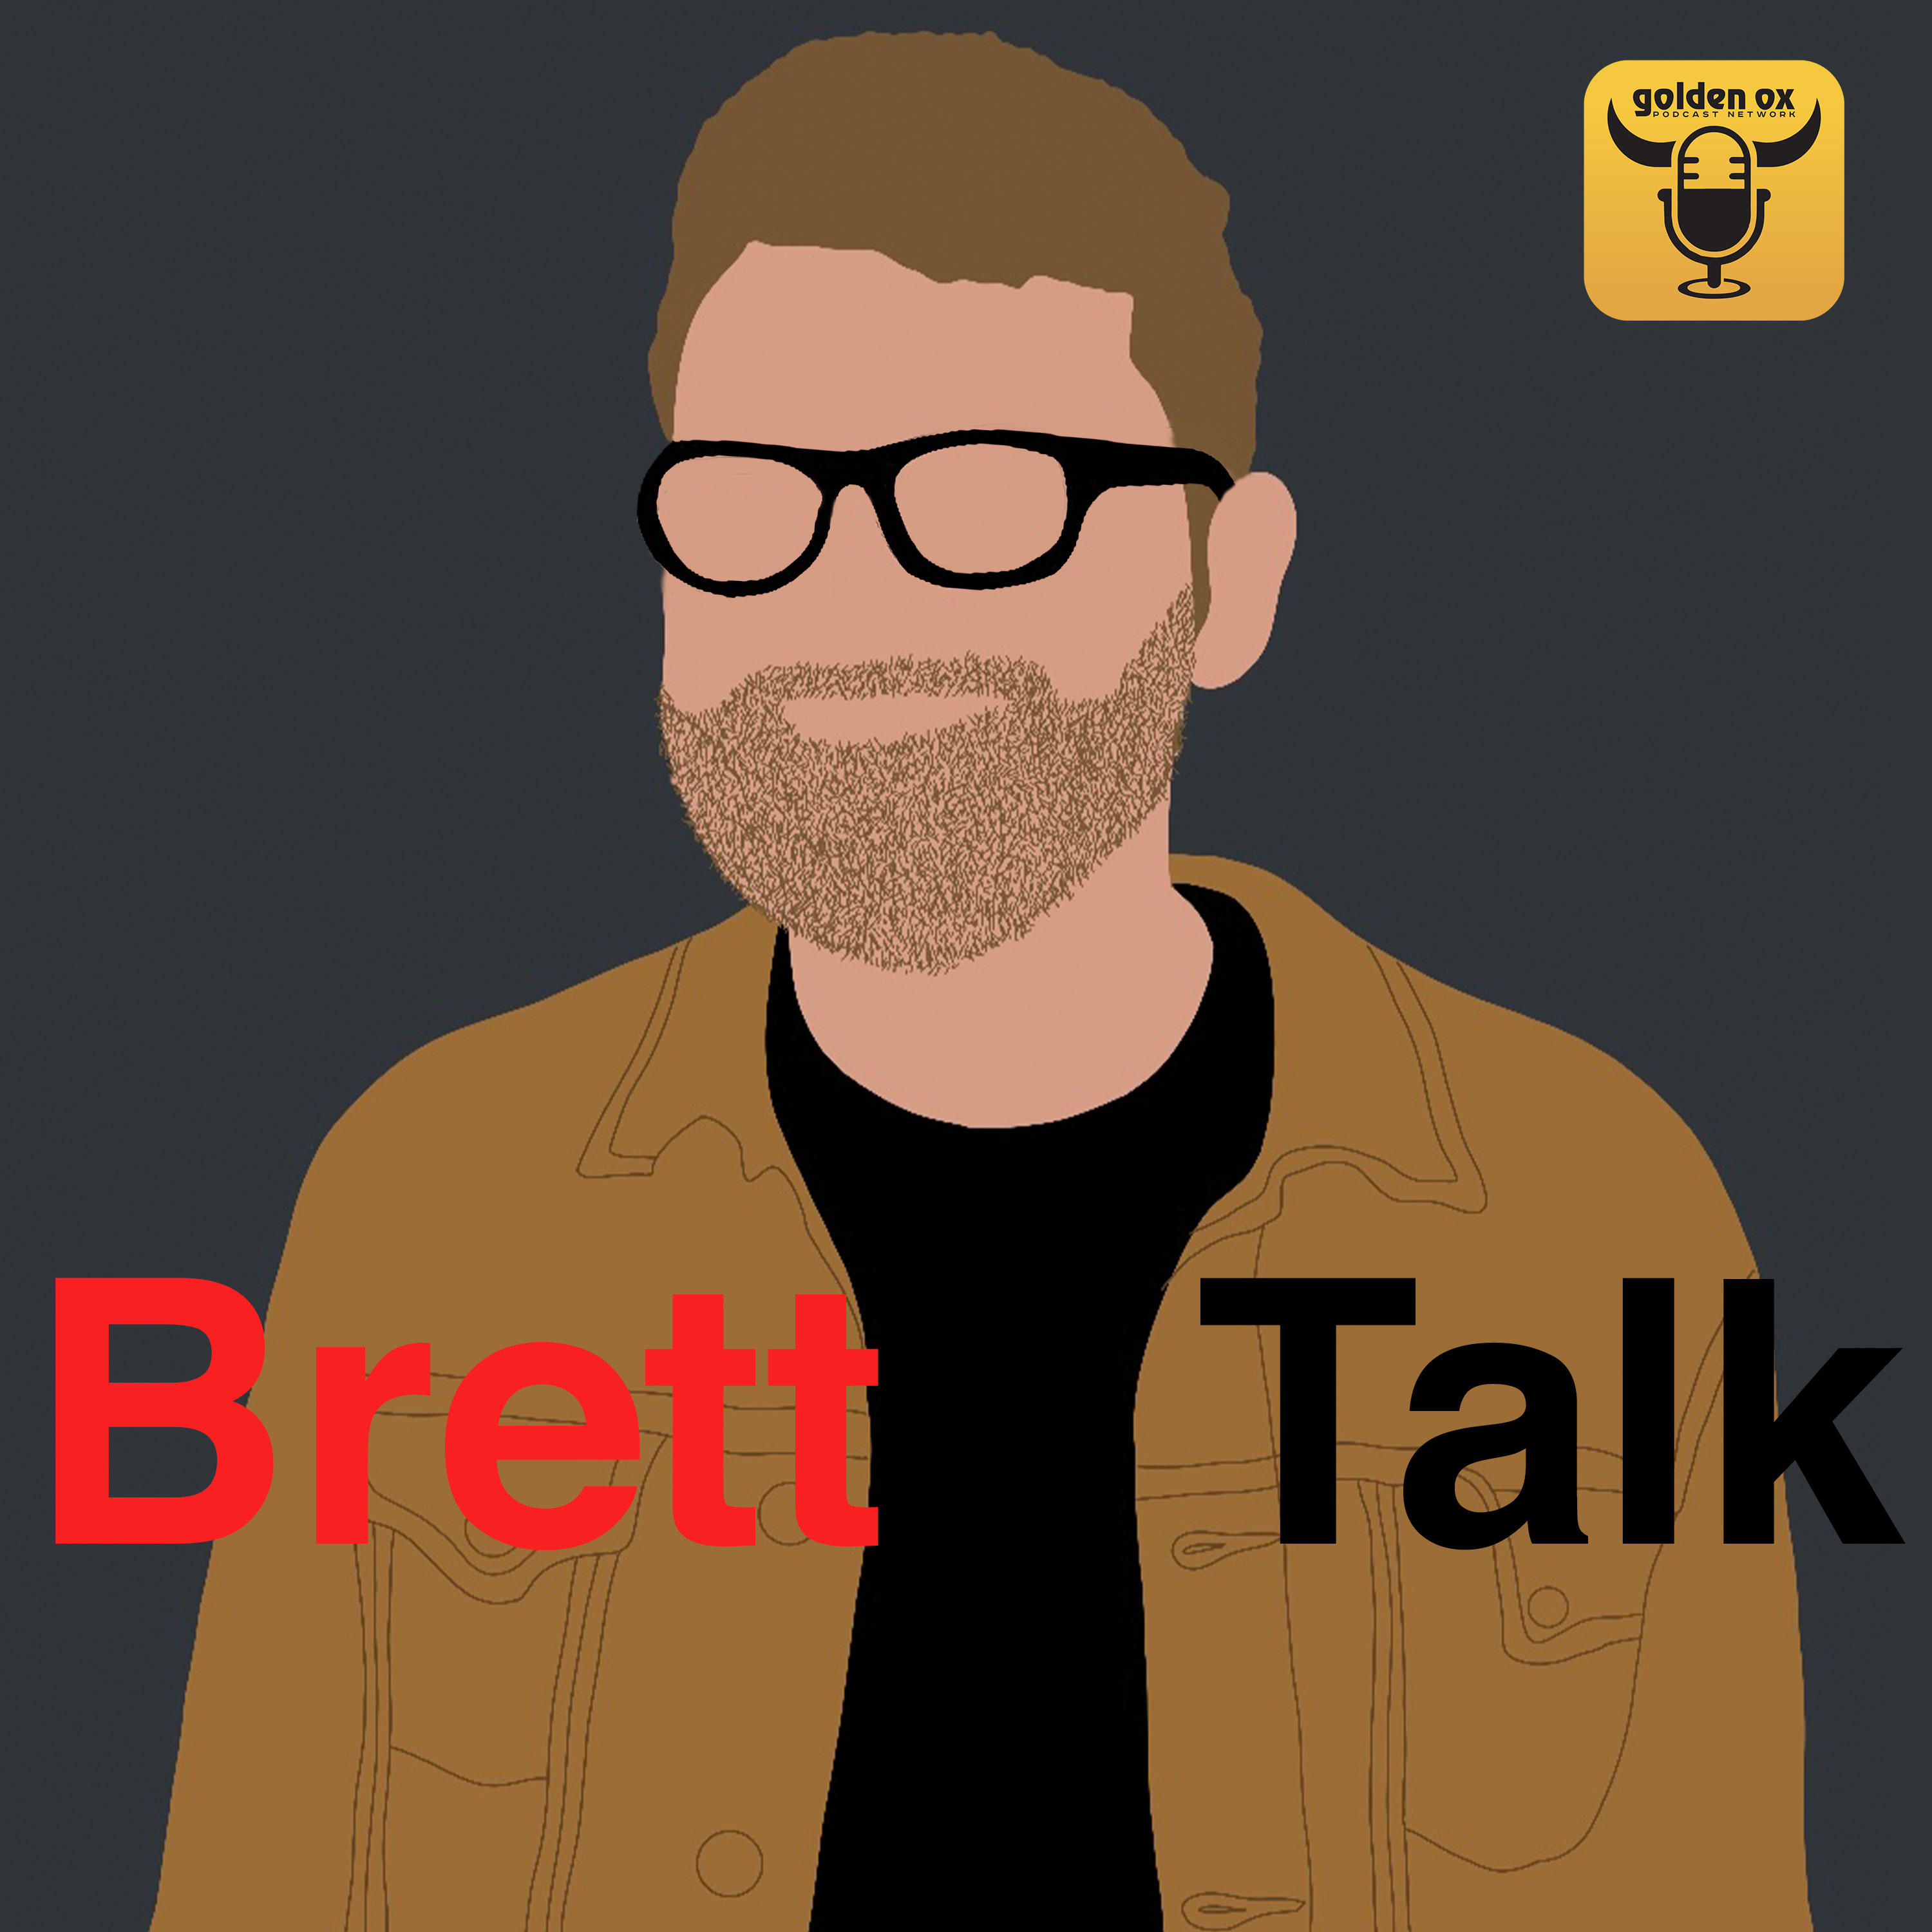 Brett Talk's artwork